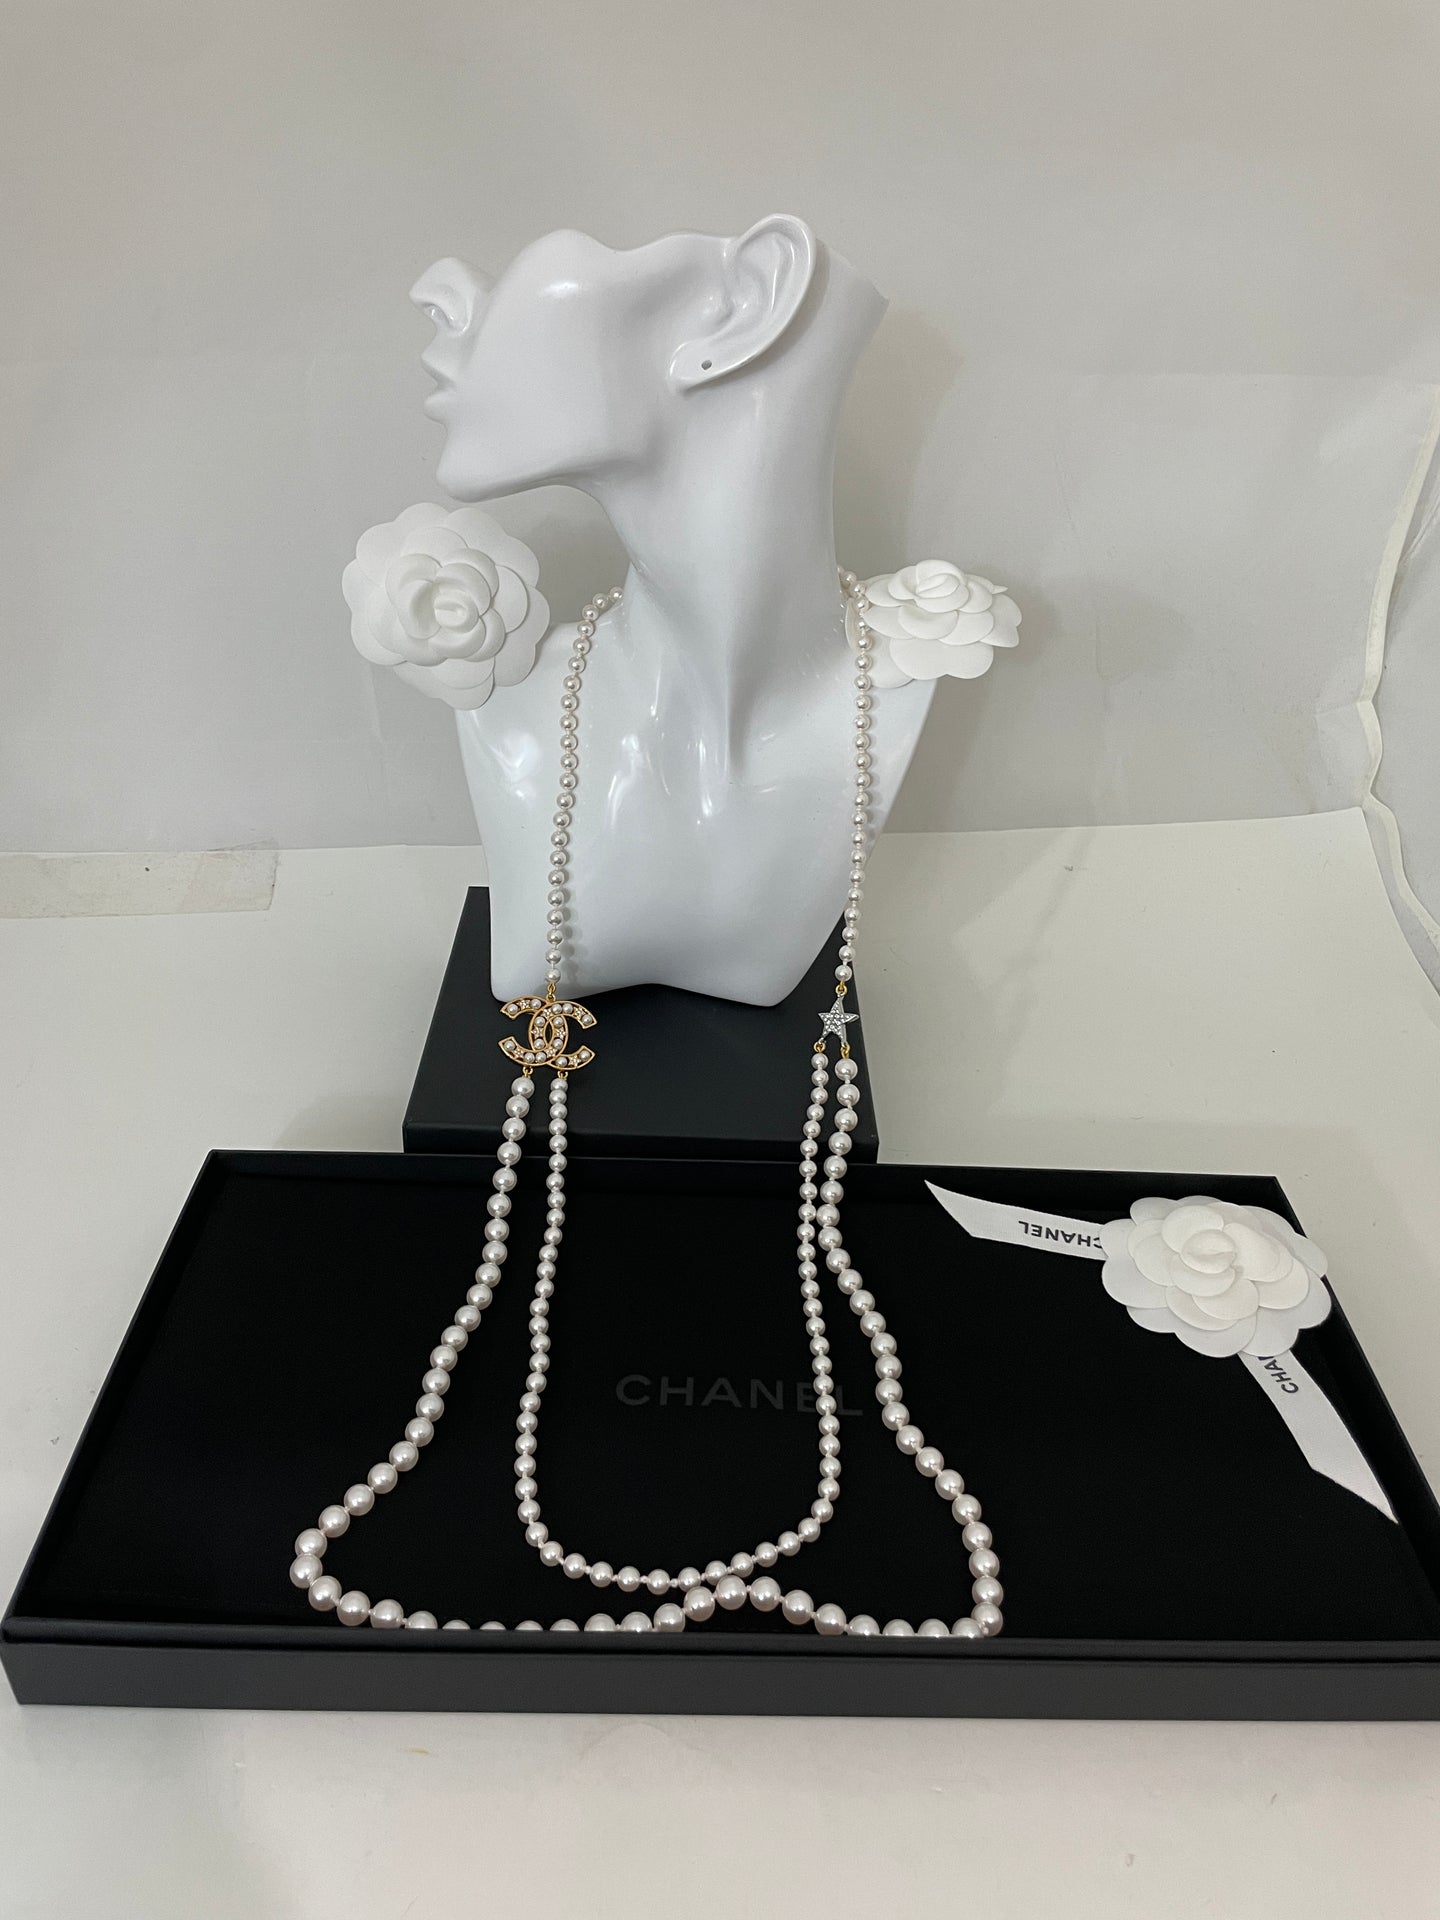 chanel necklace pearl long earrings